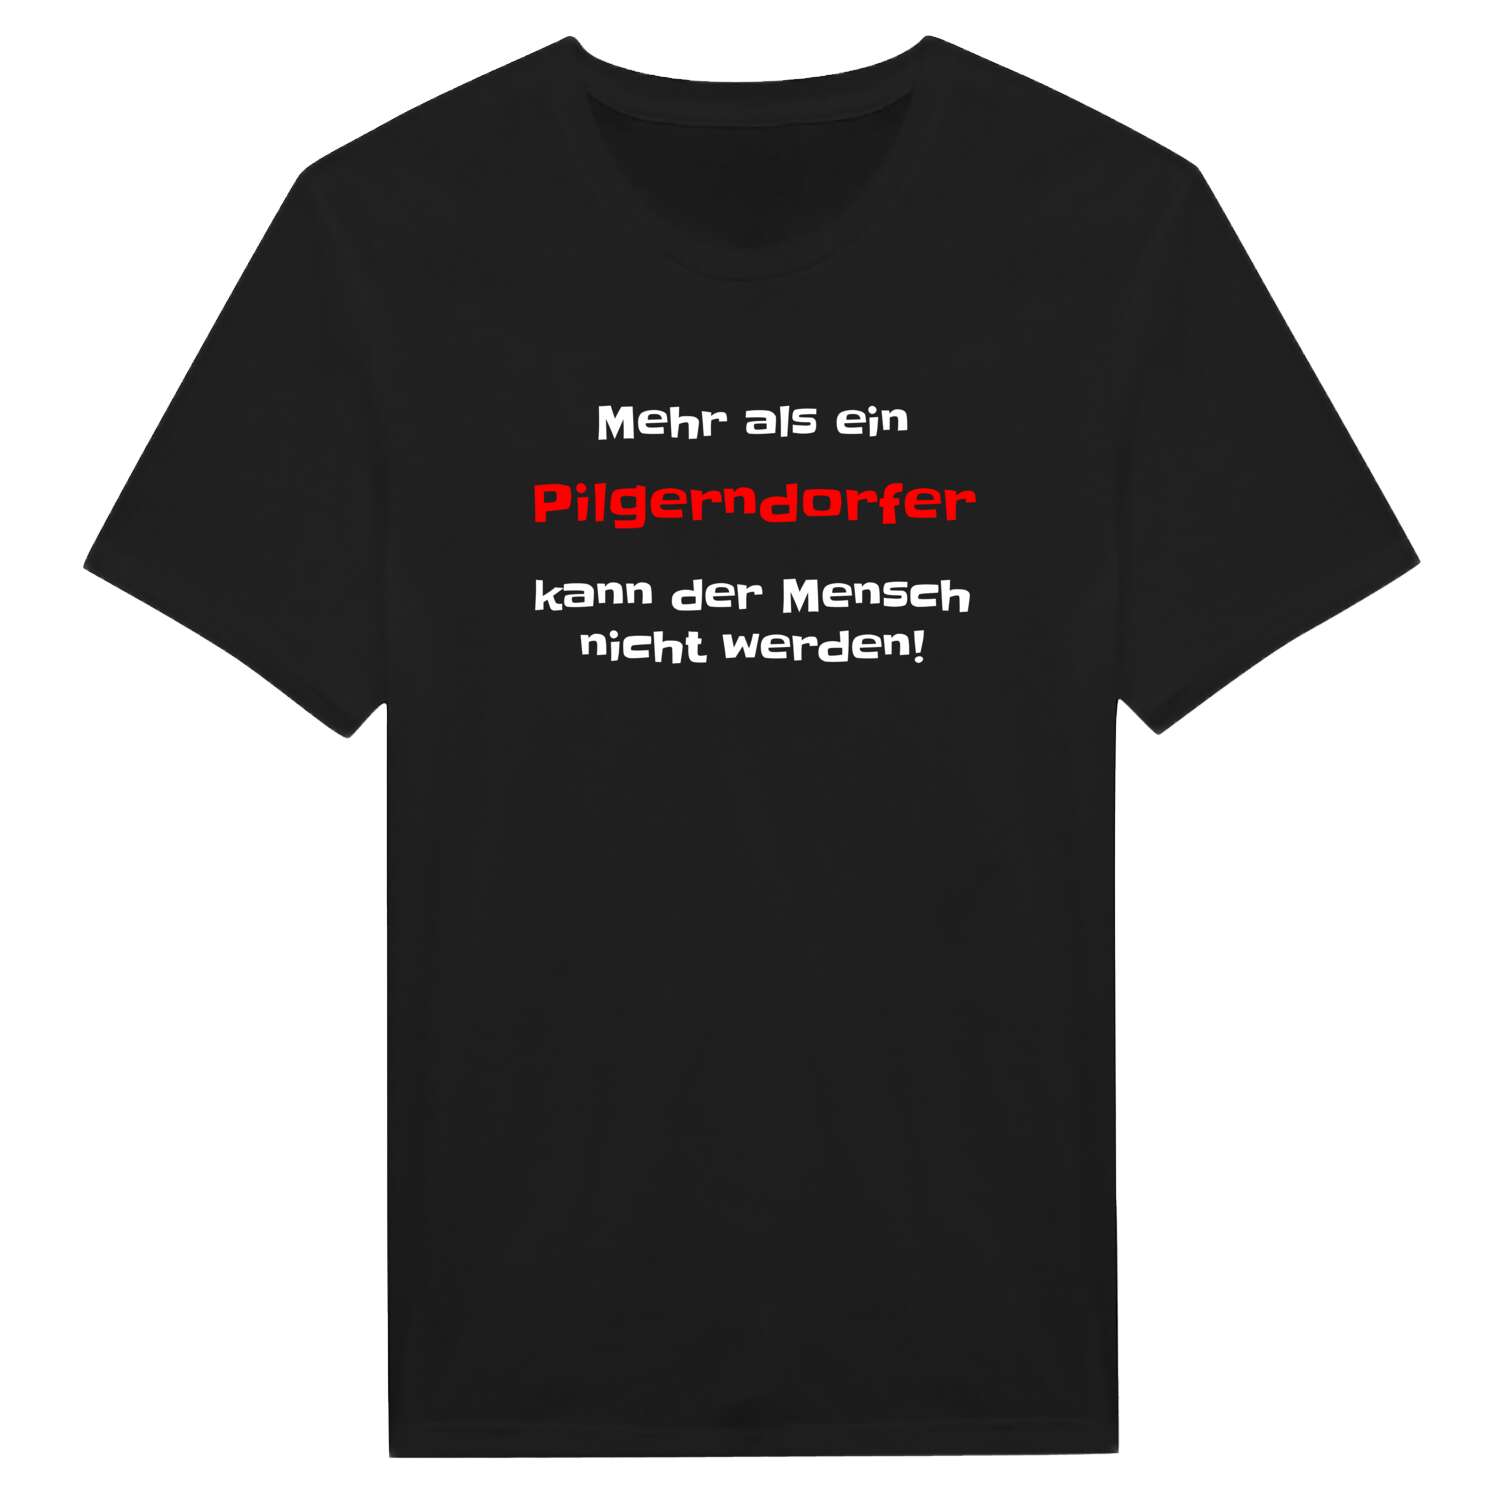 Pilgerndorf T-Shirt »Mehr als ein«